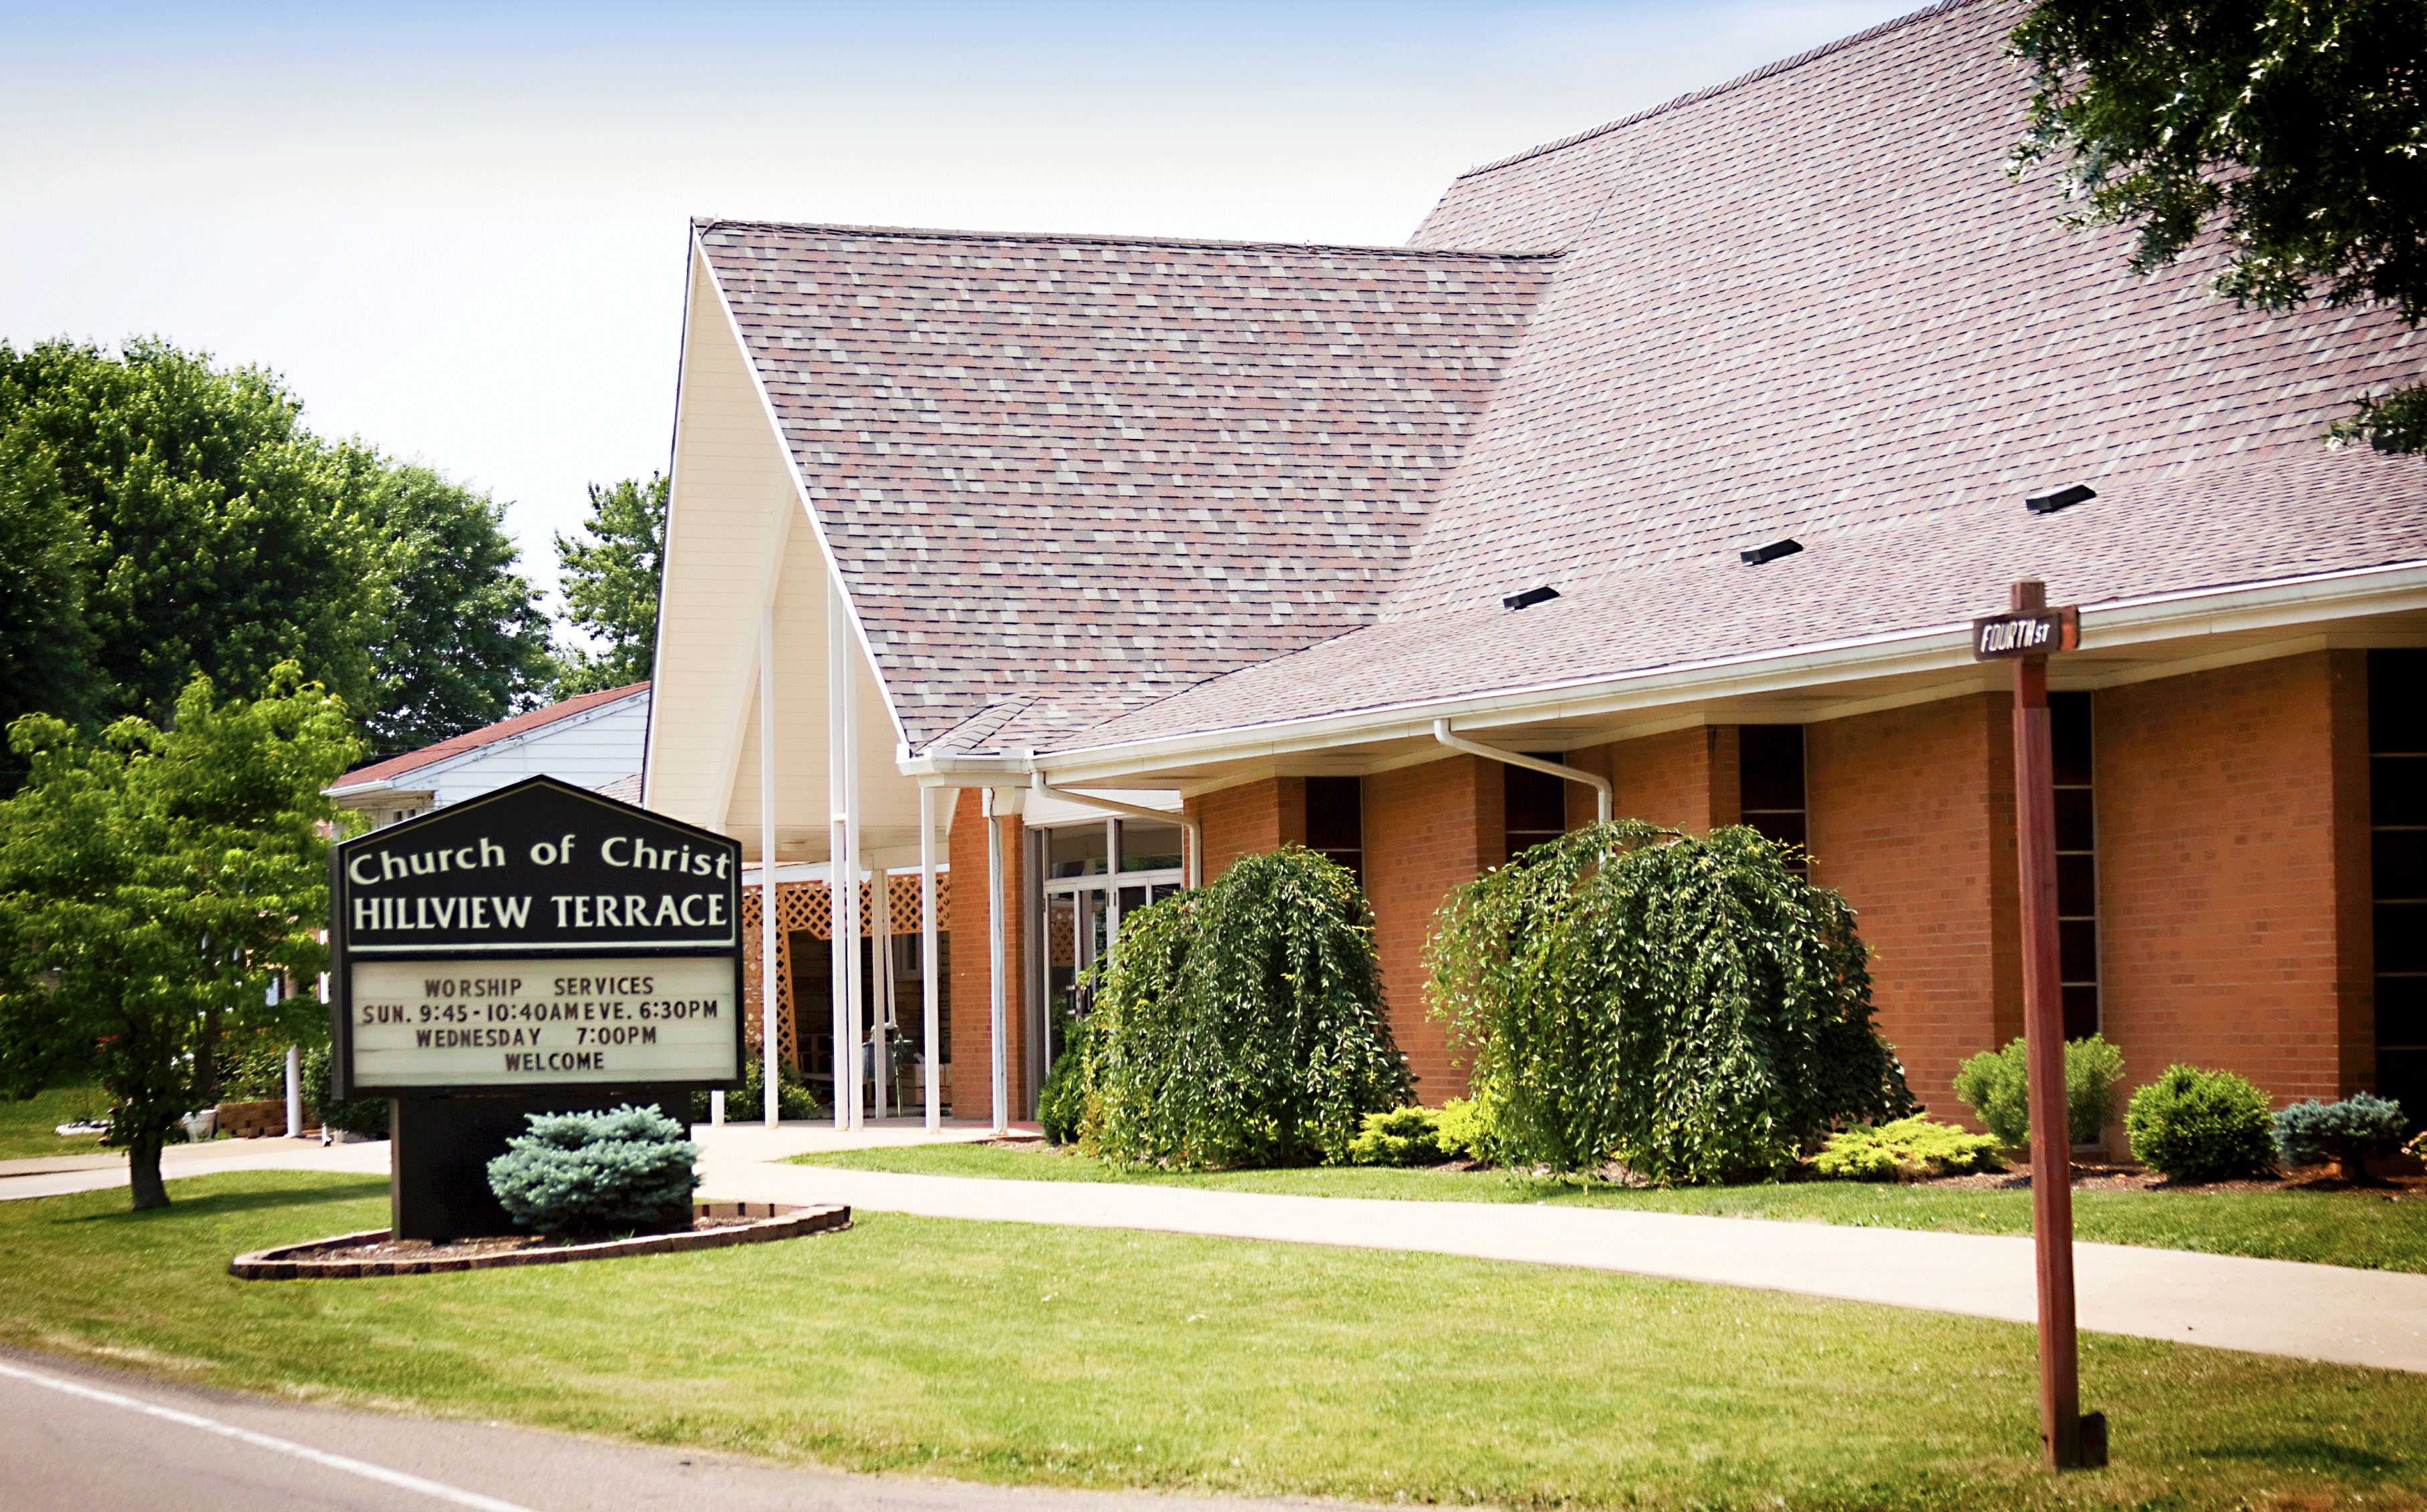 Hillview Terrace Church of Christ